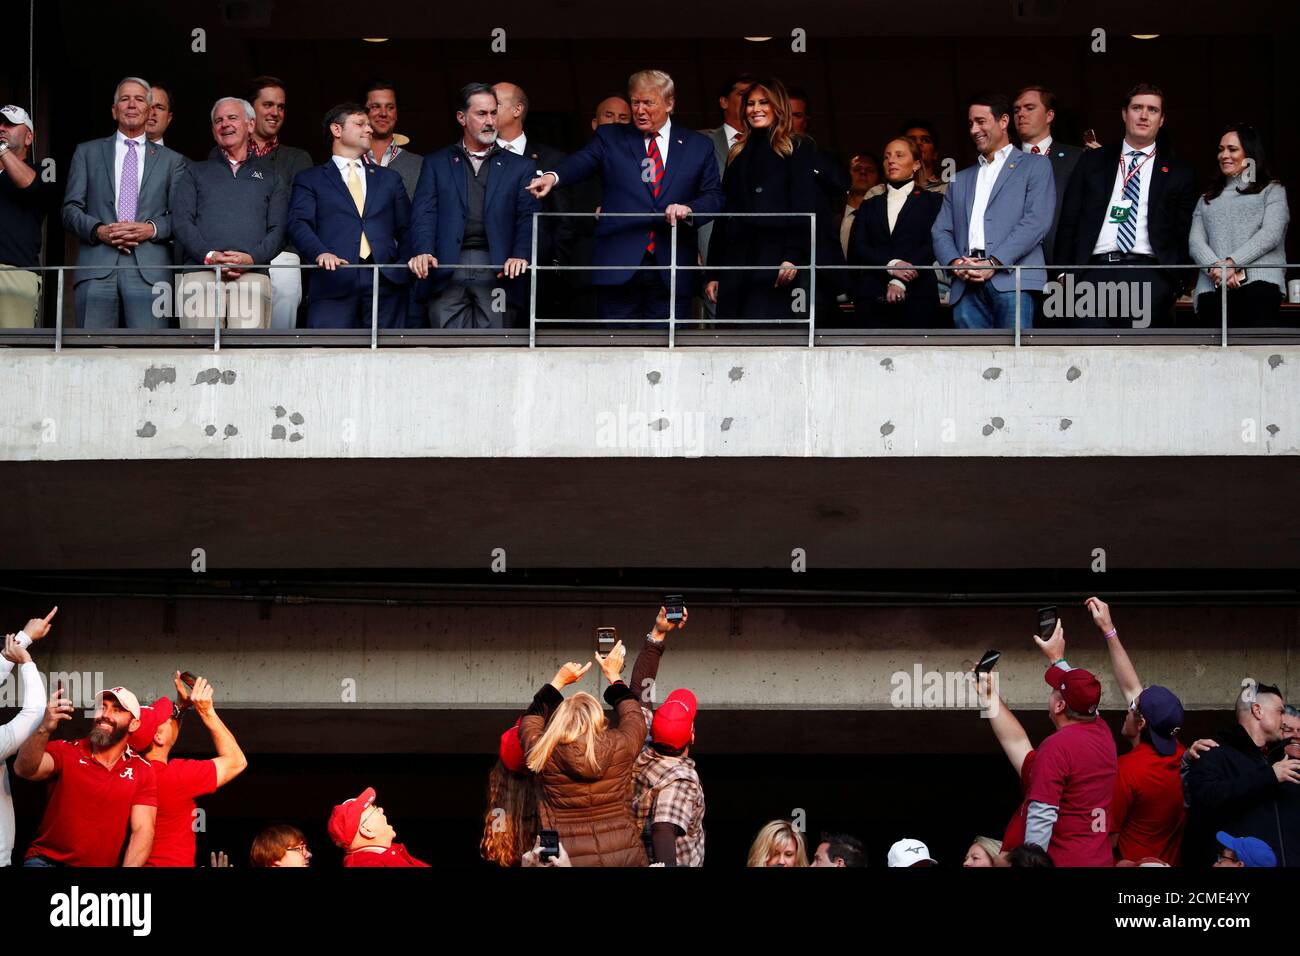 Le président américain Donald Trump et la première dame Melania Trump réagissent à la foule pendant la N.C.A.A. Match de football de la Division I entre l'Université d'État de Louisiane et l'Université d'Alabama au stade Bryant-Denny à Tuscaloosa, Alabama, États-Unis, le 9 novembre 2019. REUTERS/Tom Brenner Banque D'Images